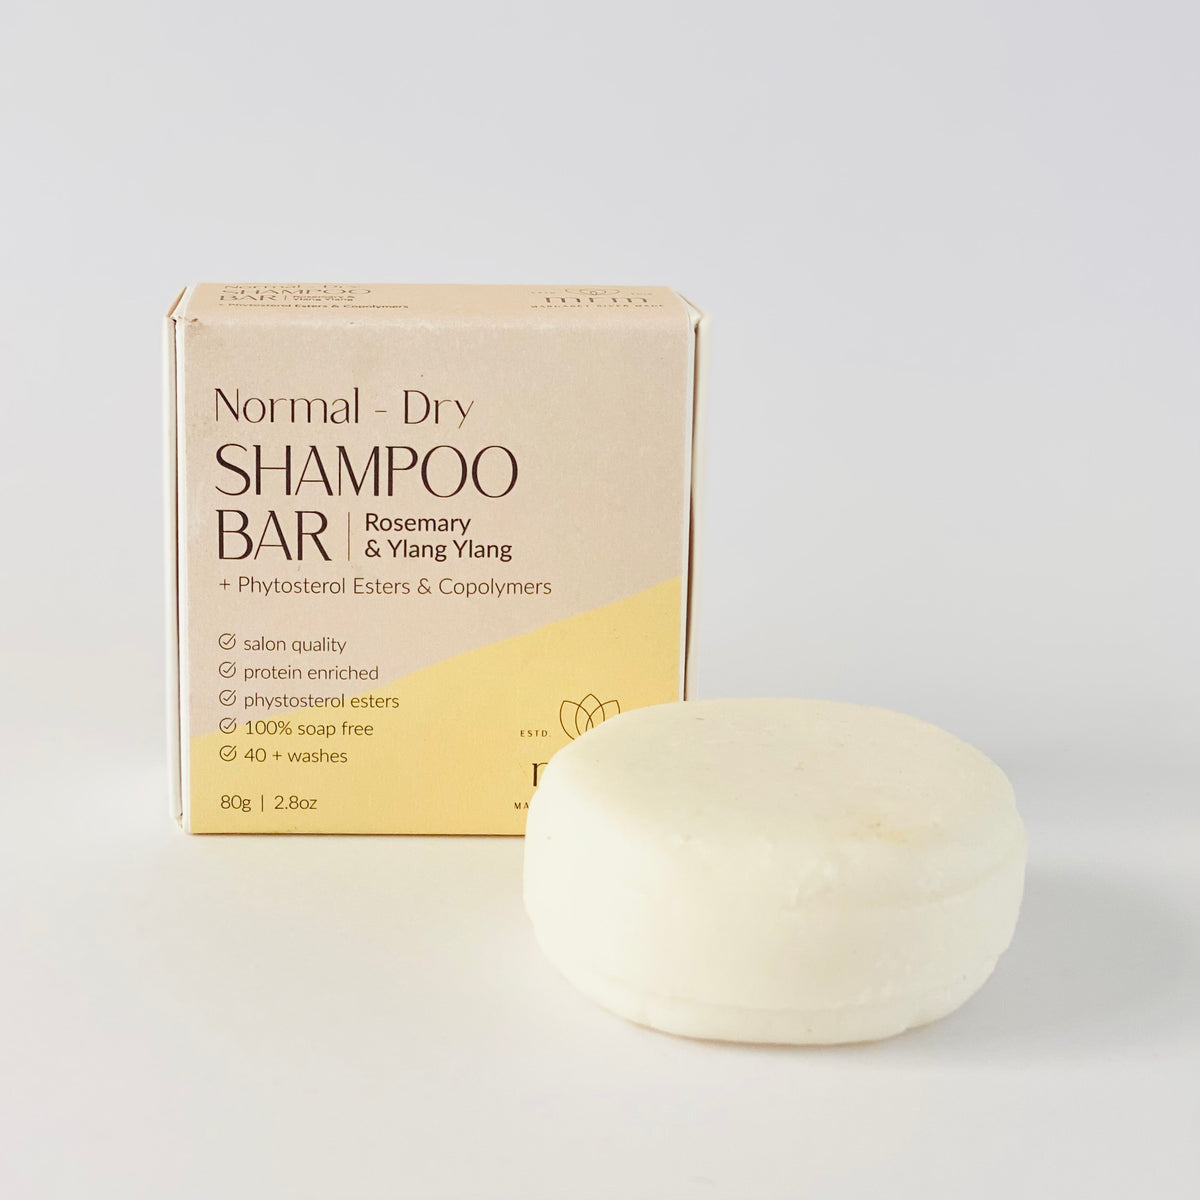 Normal to Dry Hair Shampoo Bar with Rosemary & Ylang Ylang